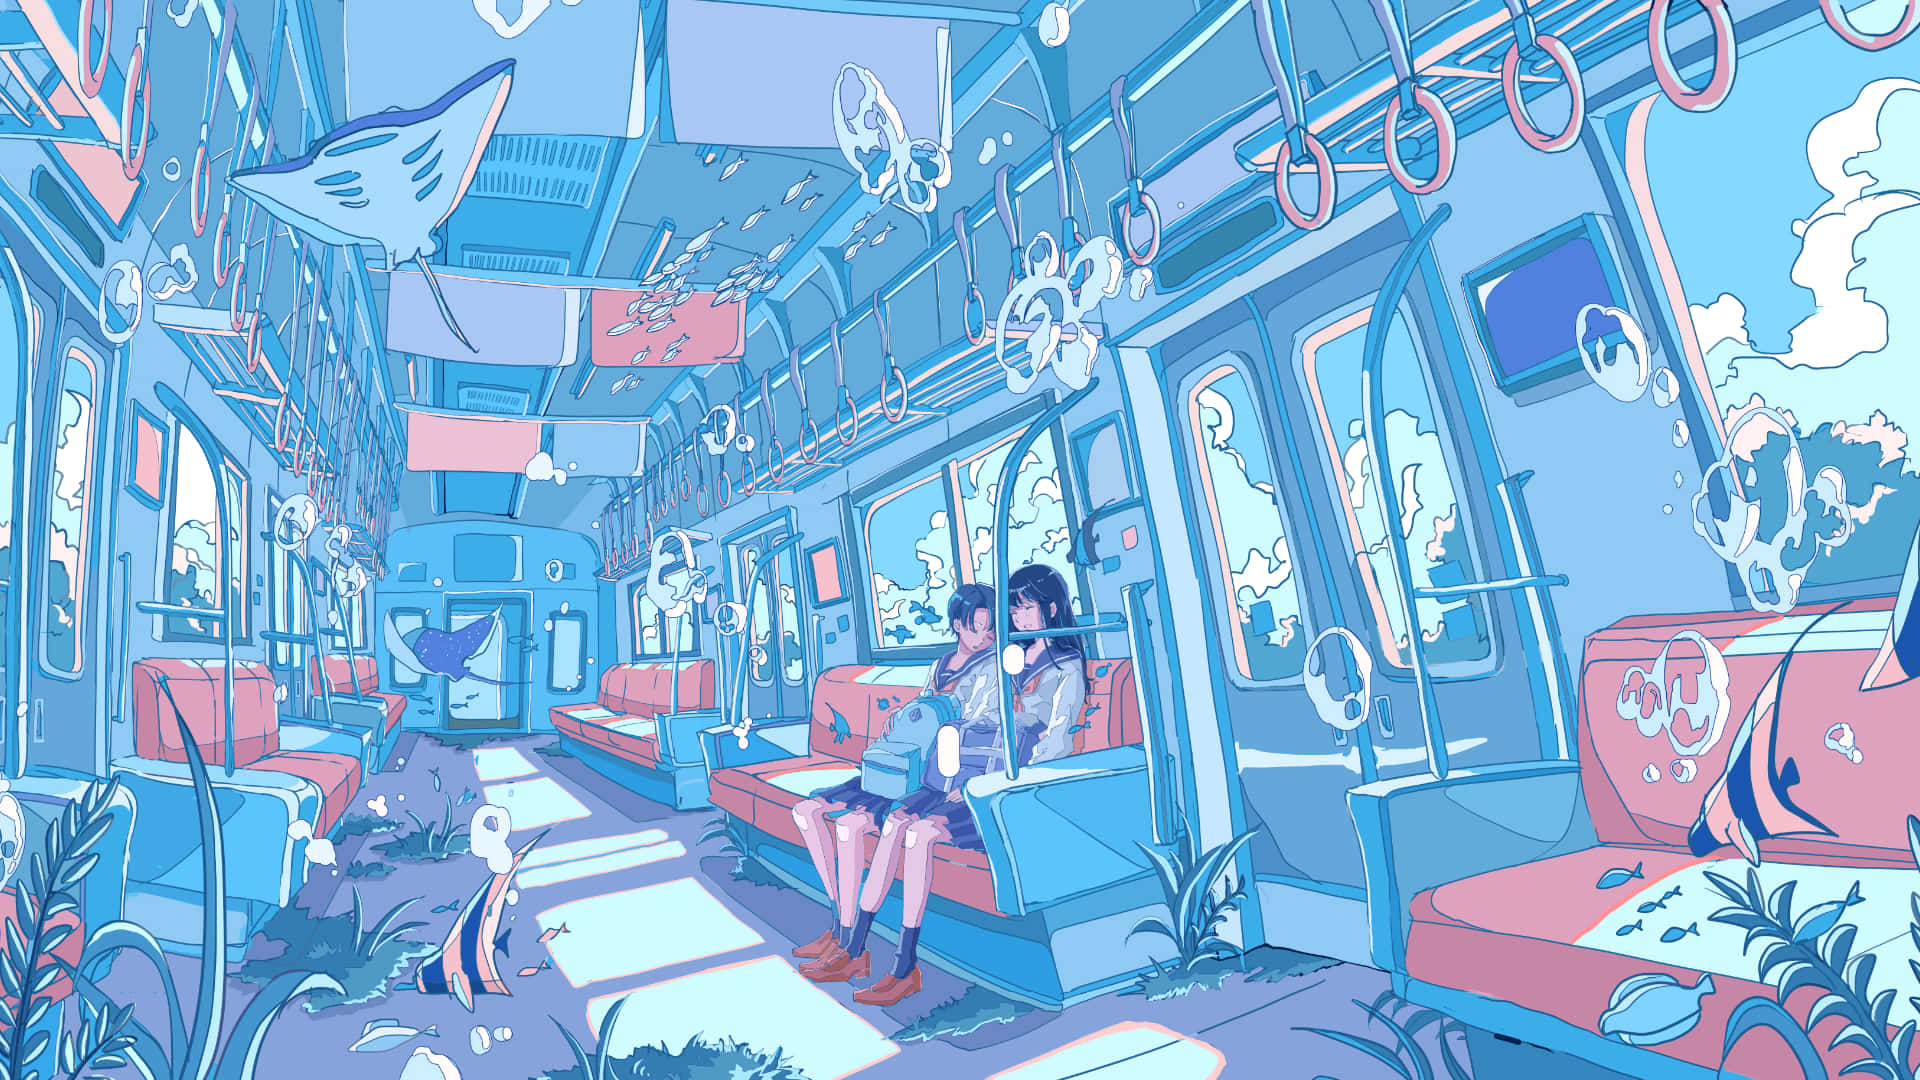 Unfondo De Escritorio Tranquilo Con Temática De Studio Ghibli. Fondo de pantalla